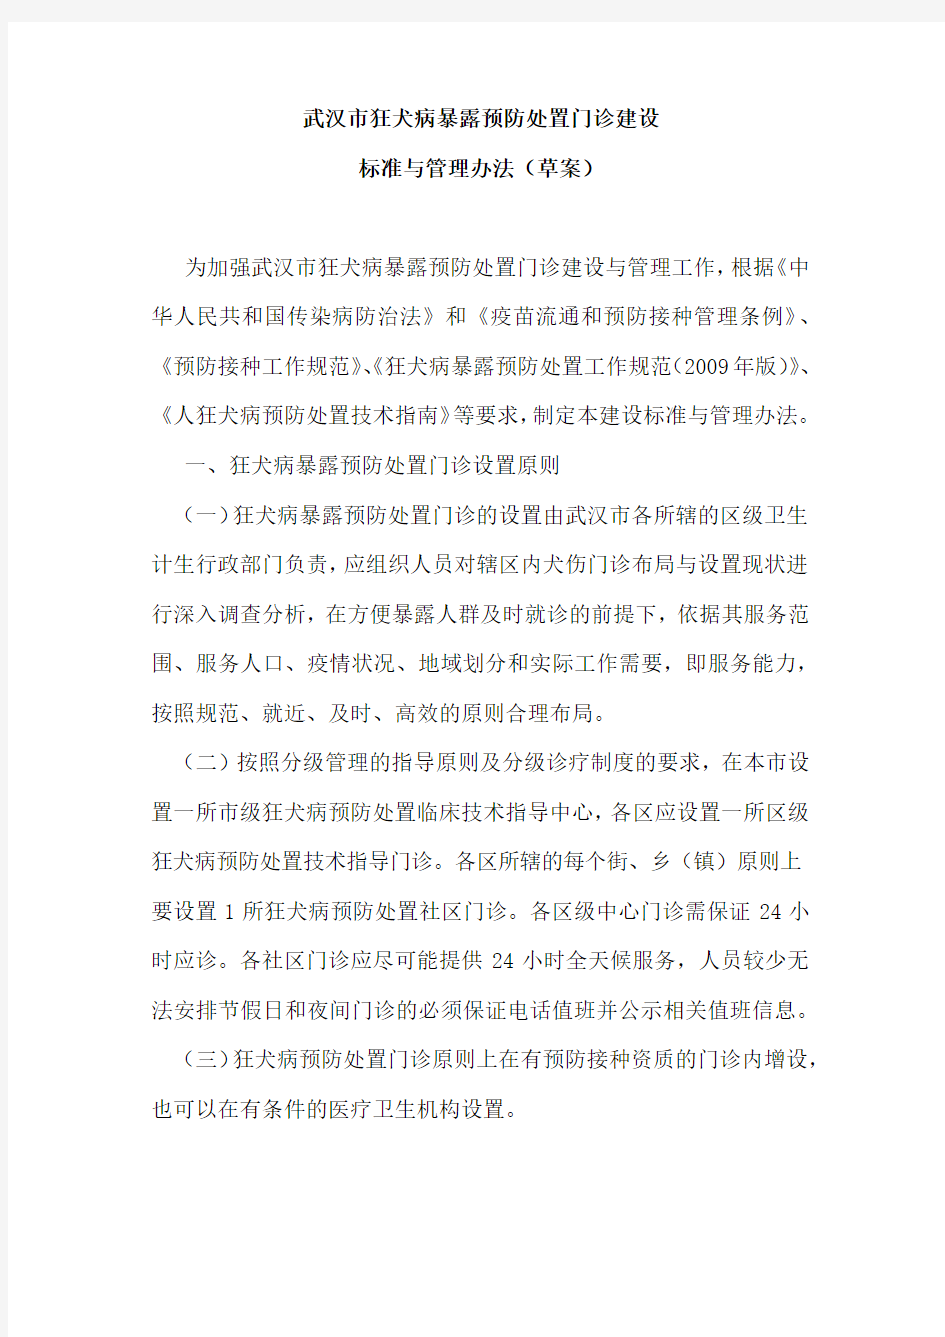 武汉市狂犬病暴露预防处置门诊建设标准与管理办法 (1)